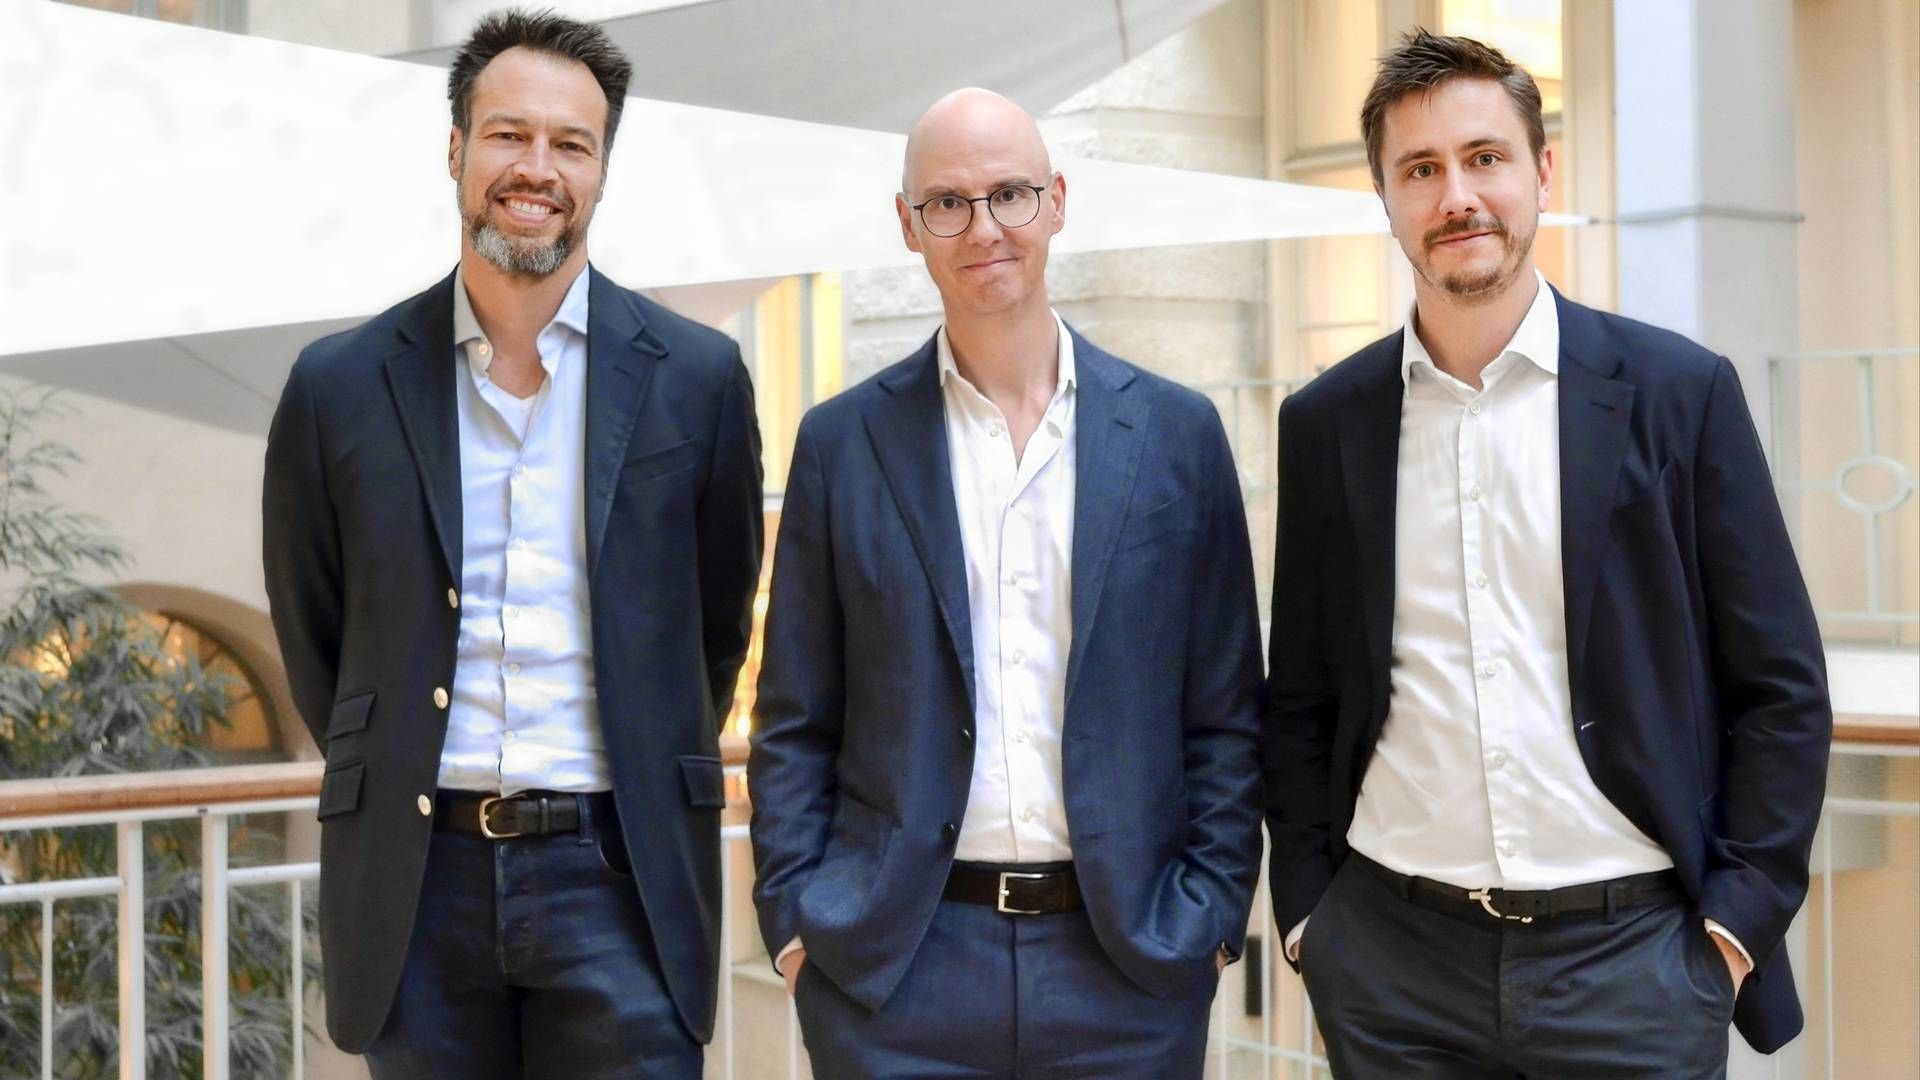 Fv. Lars Lunde, partner i Gro, Andreas Zartmann, CEO i Digitalroute, og Johan Olsson, director i Gro. | Foto: Gro